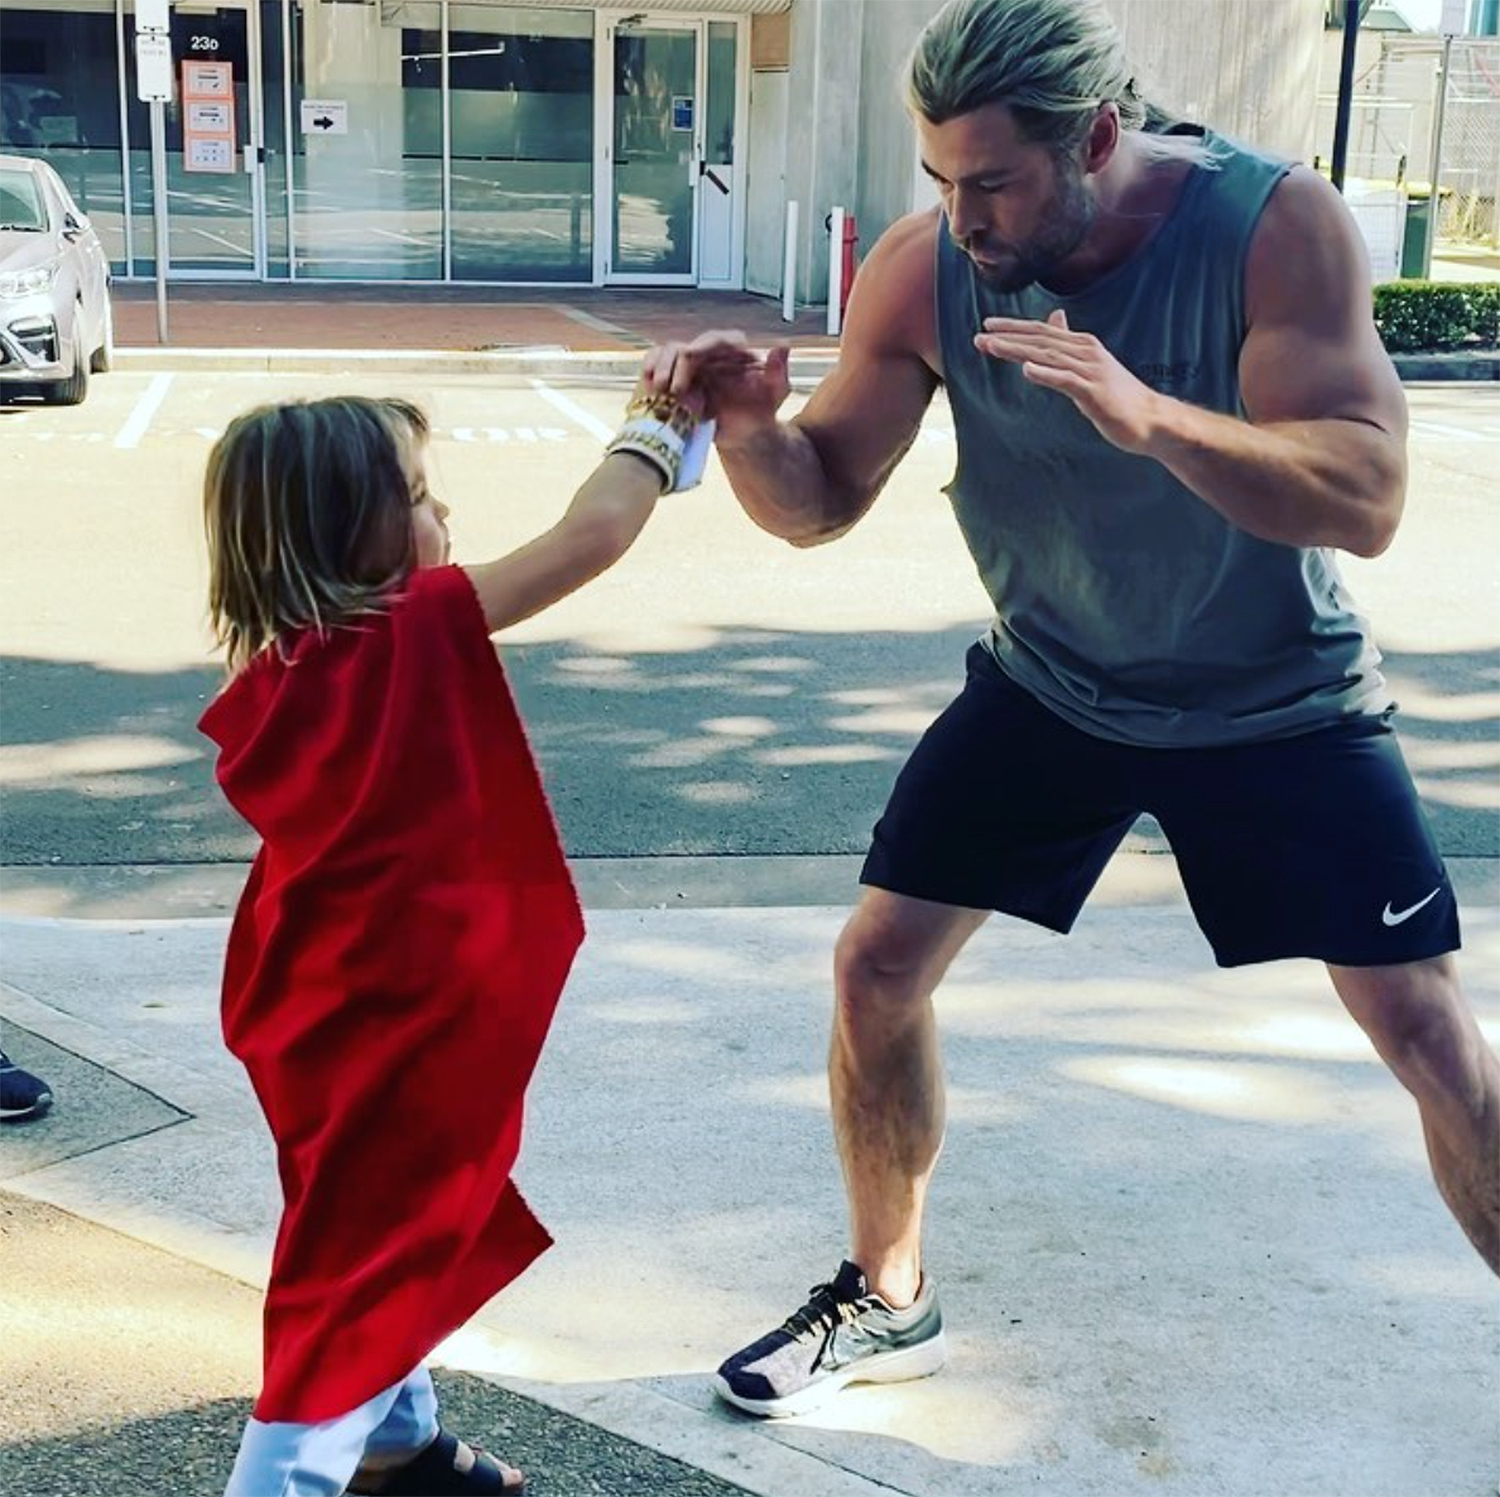 کریس همسورث ویدیویی از خود و پسرش در اینستاگرام منتشر کرده که در آن پسرش نقش هاکای (Hawkeye) را بازی کرده و به سمت پدرش تیر پرتاب می کند